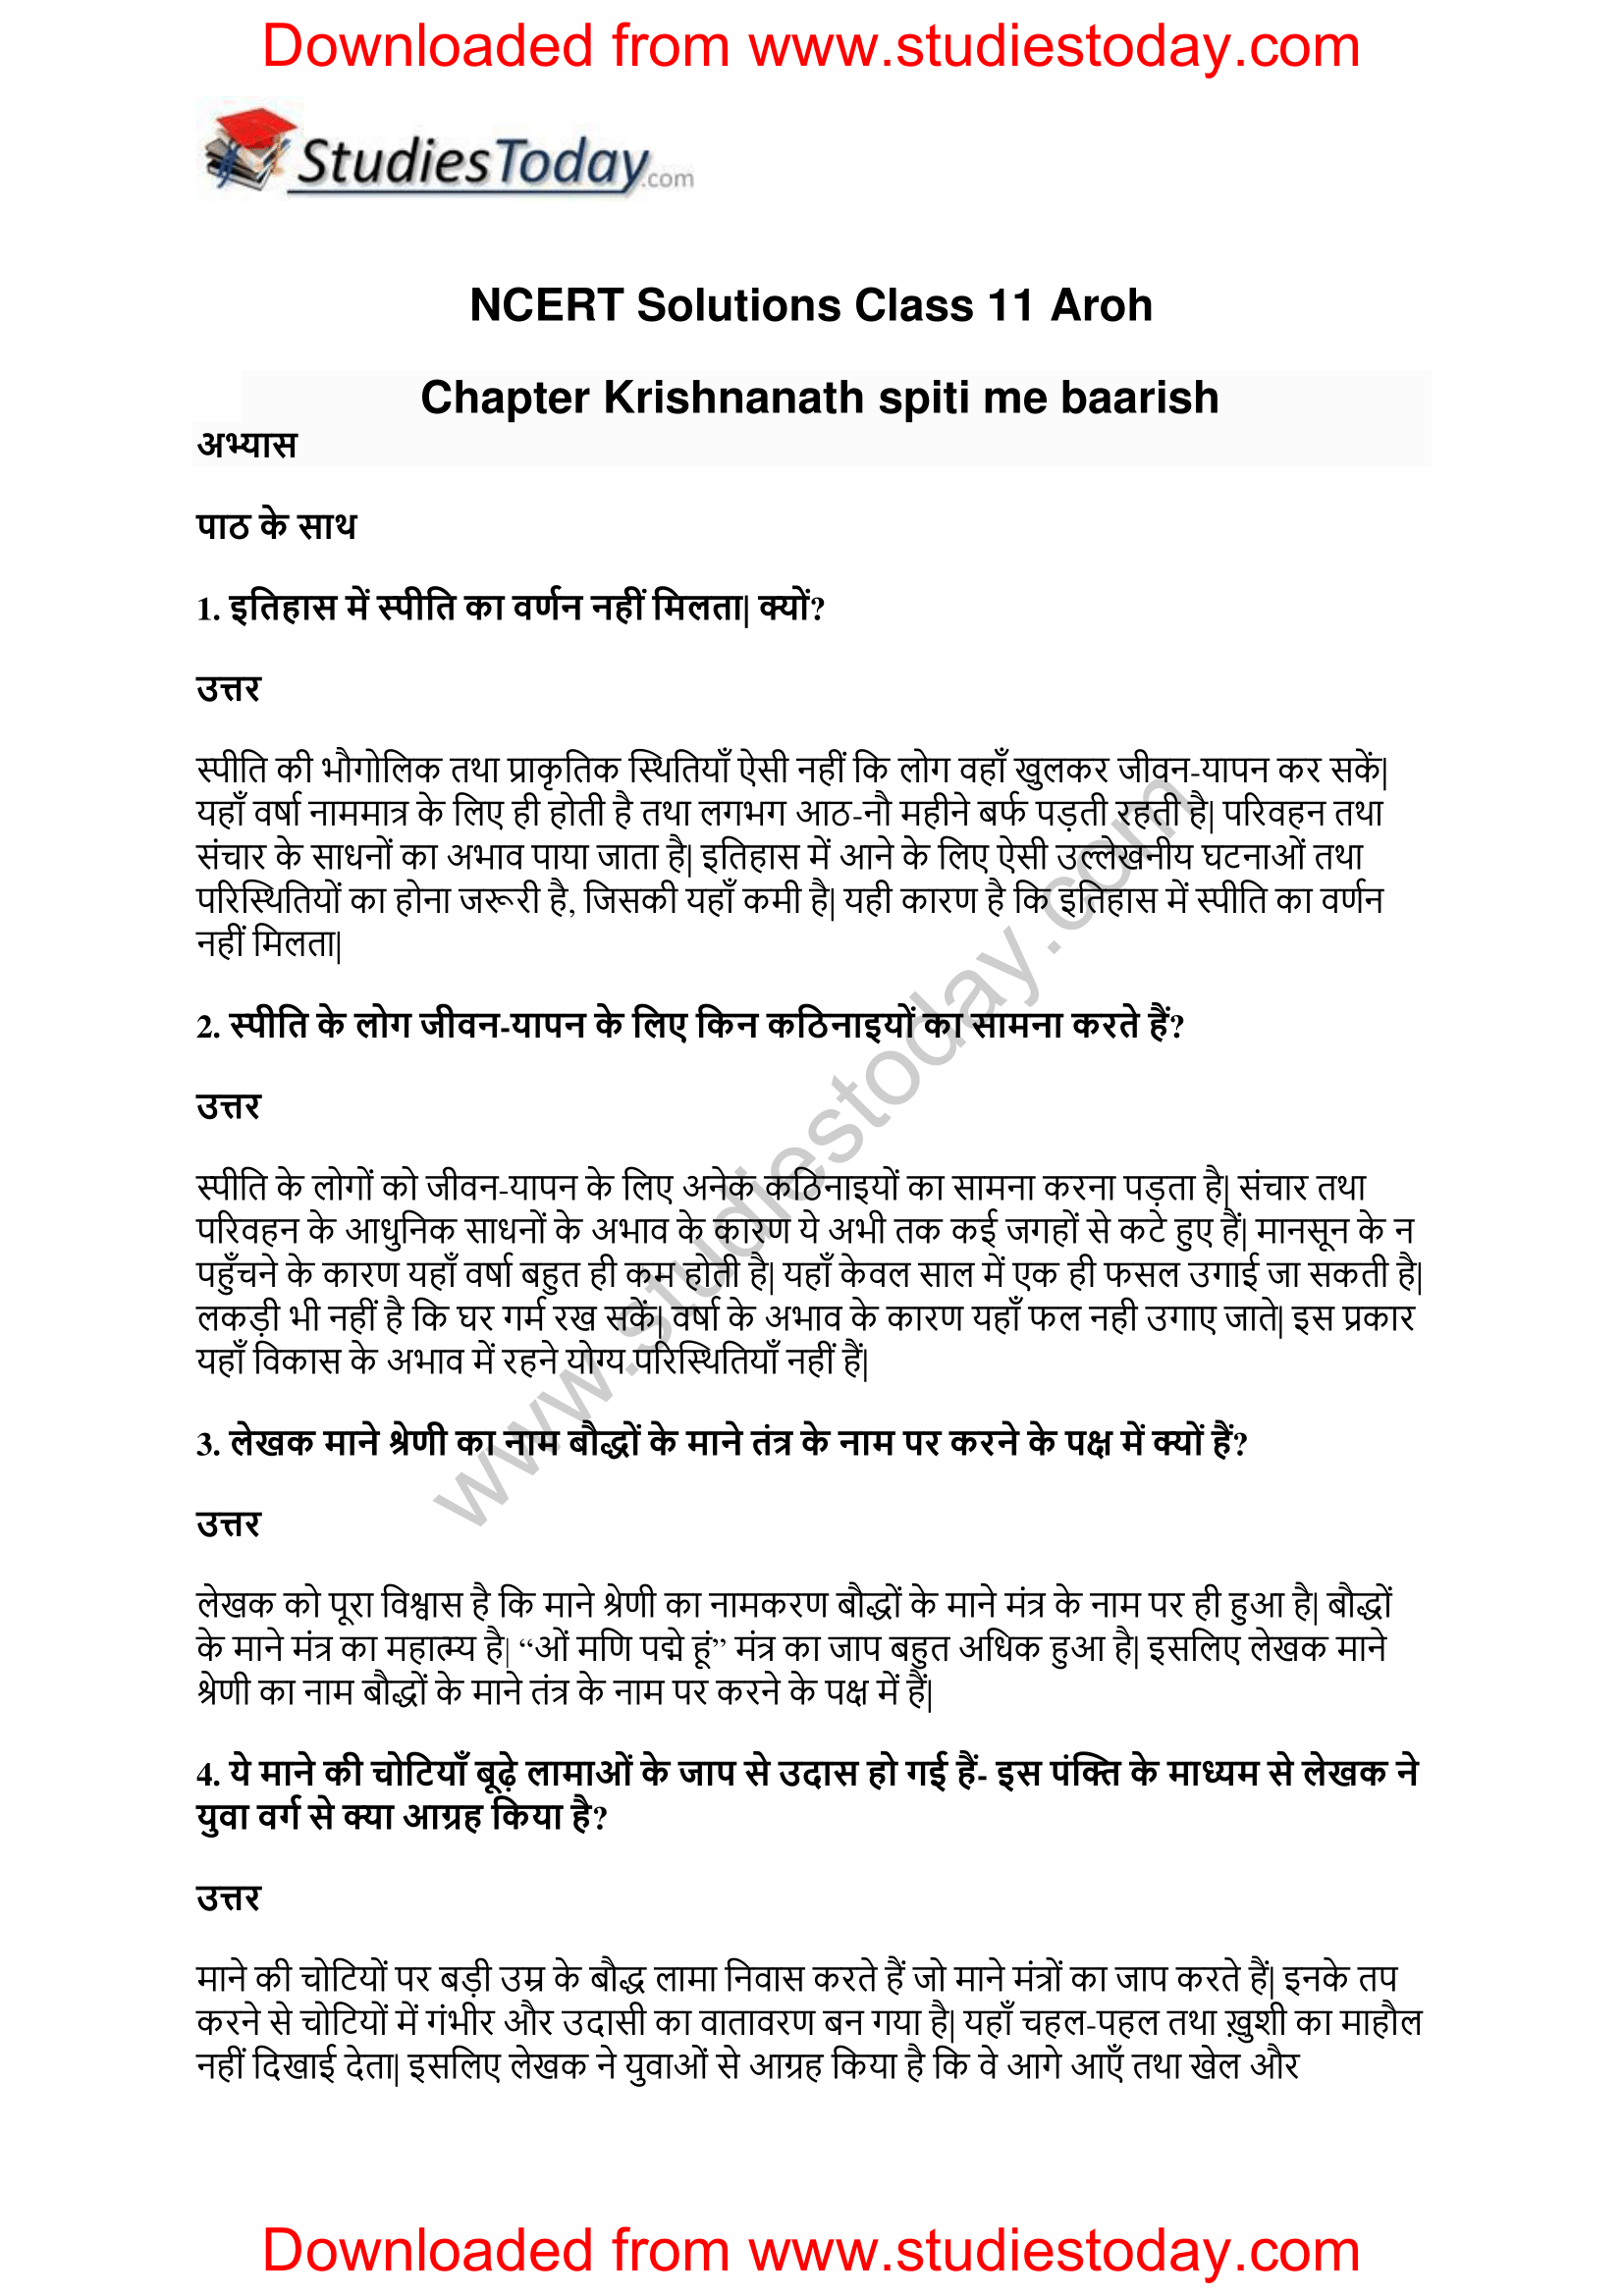 NCERT-Solutions-Class-11-Hindi-Aroh-Krishnanath-1